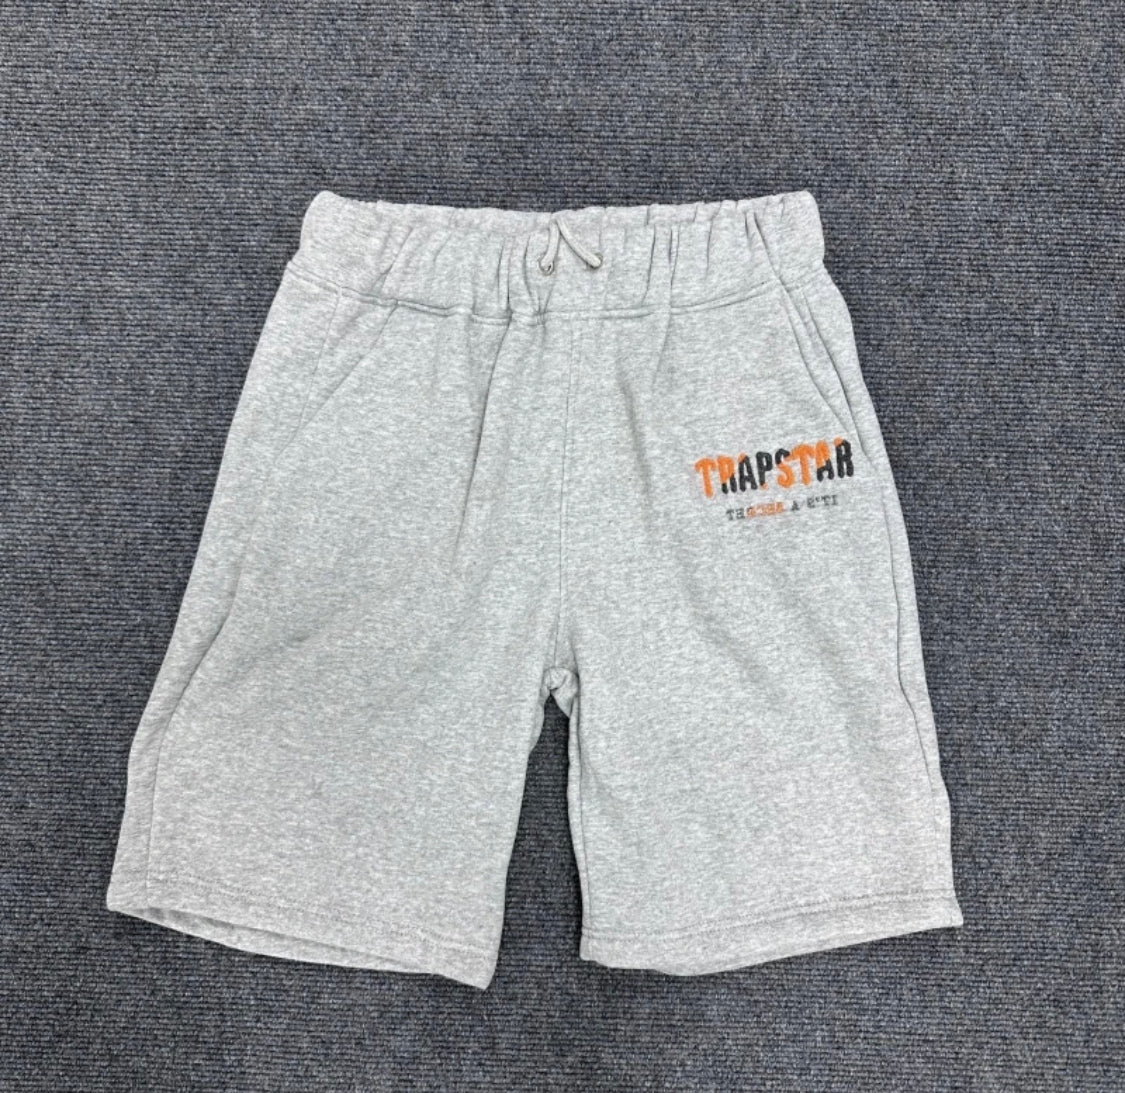 Chenile Shorts and tee - Grey/Black/Orange